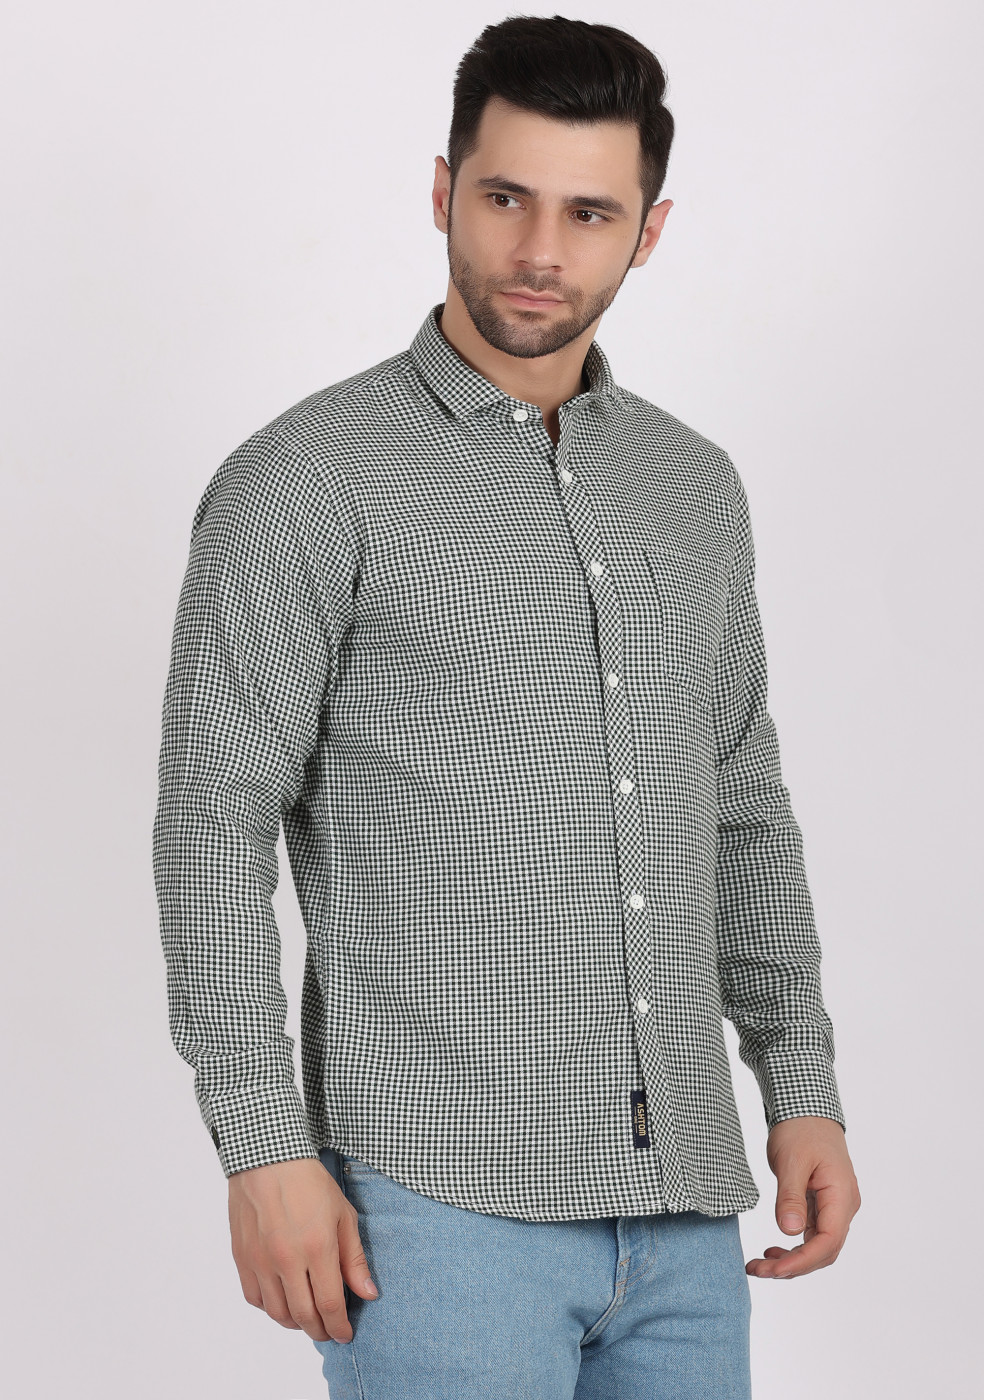 Buy online ASHTOM Olive Color Small Check Shirt For Men